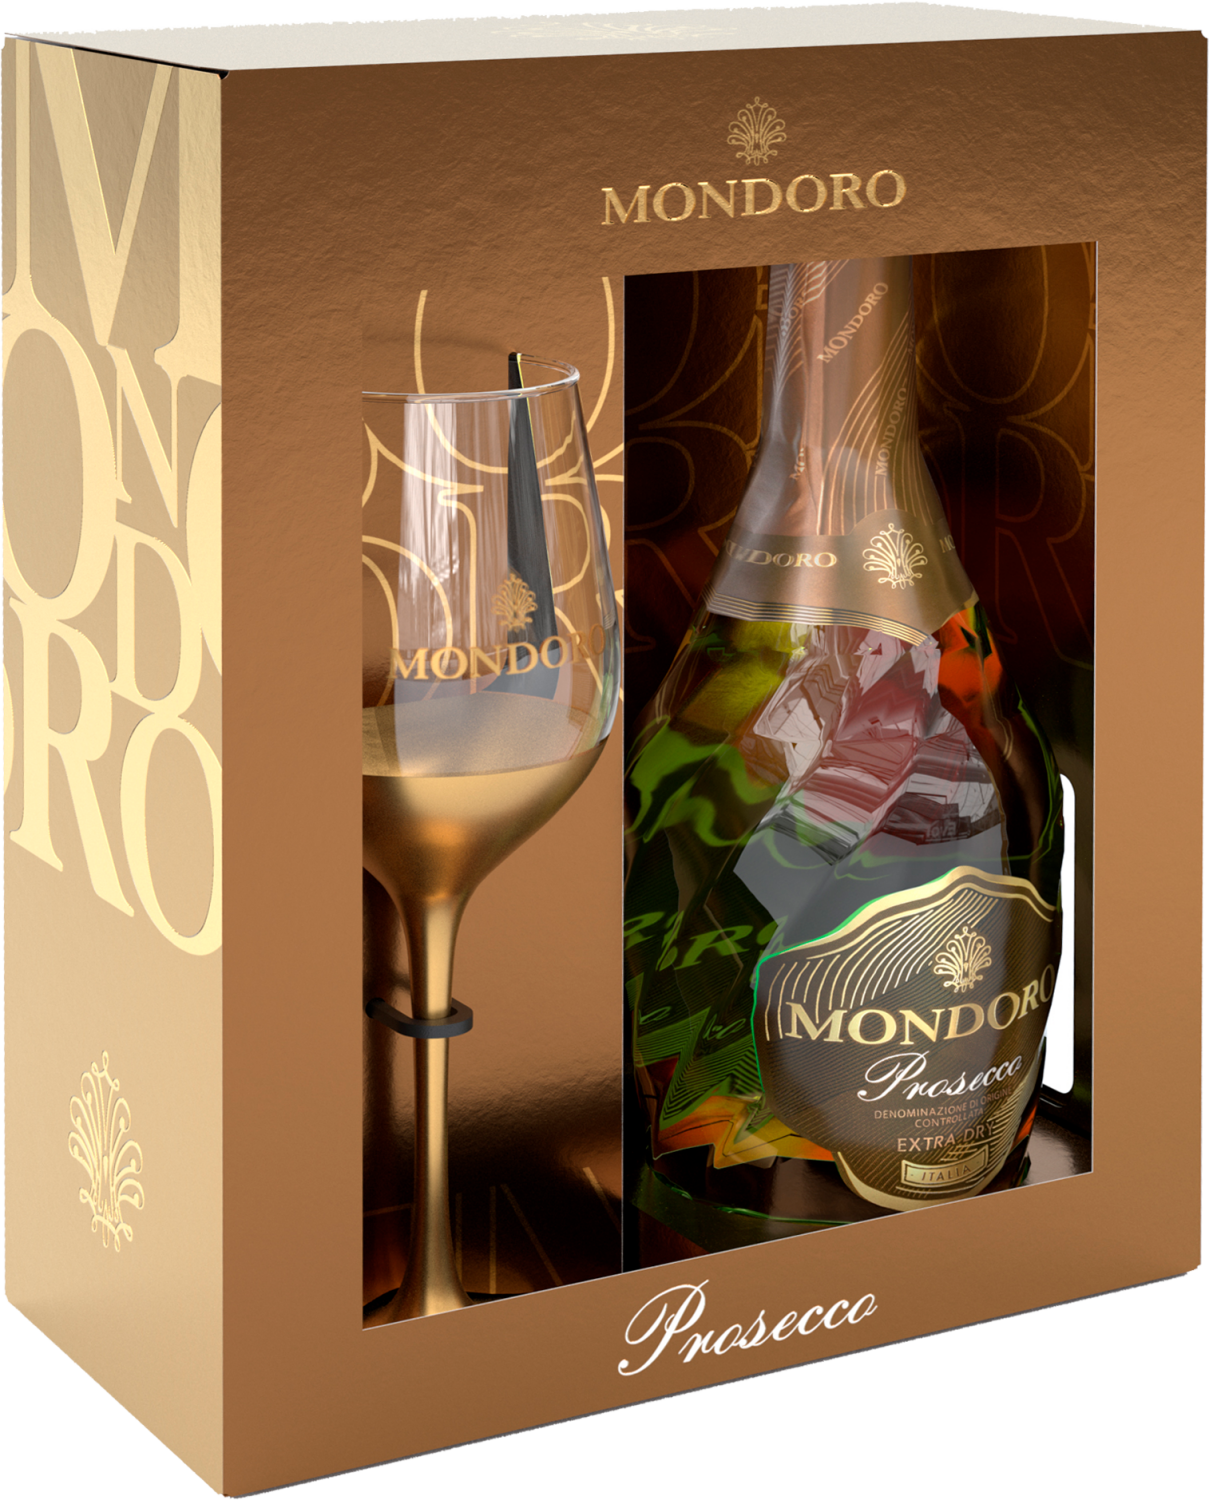 Mondoro Prosecco DOC Campari (gift box with glass) la gioiosa prosecco doc gift box